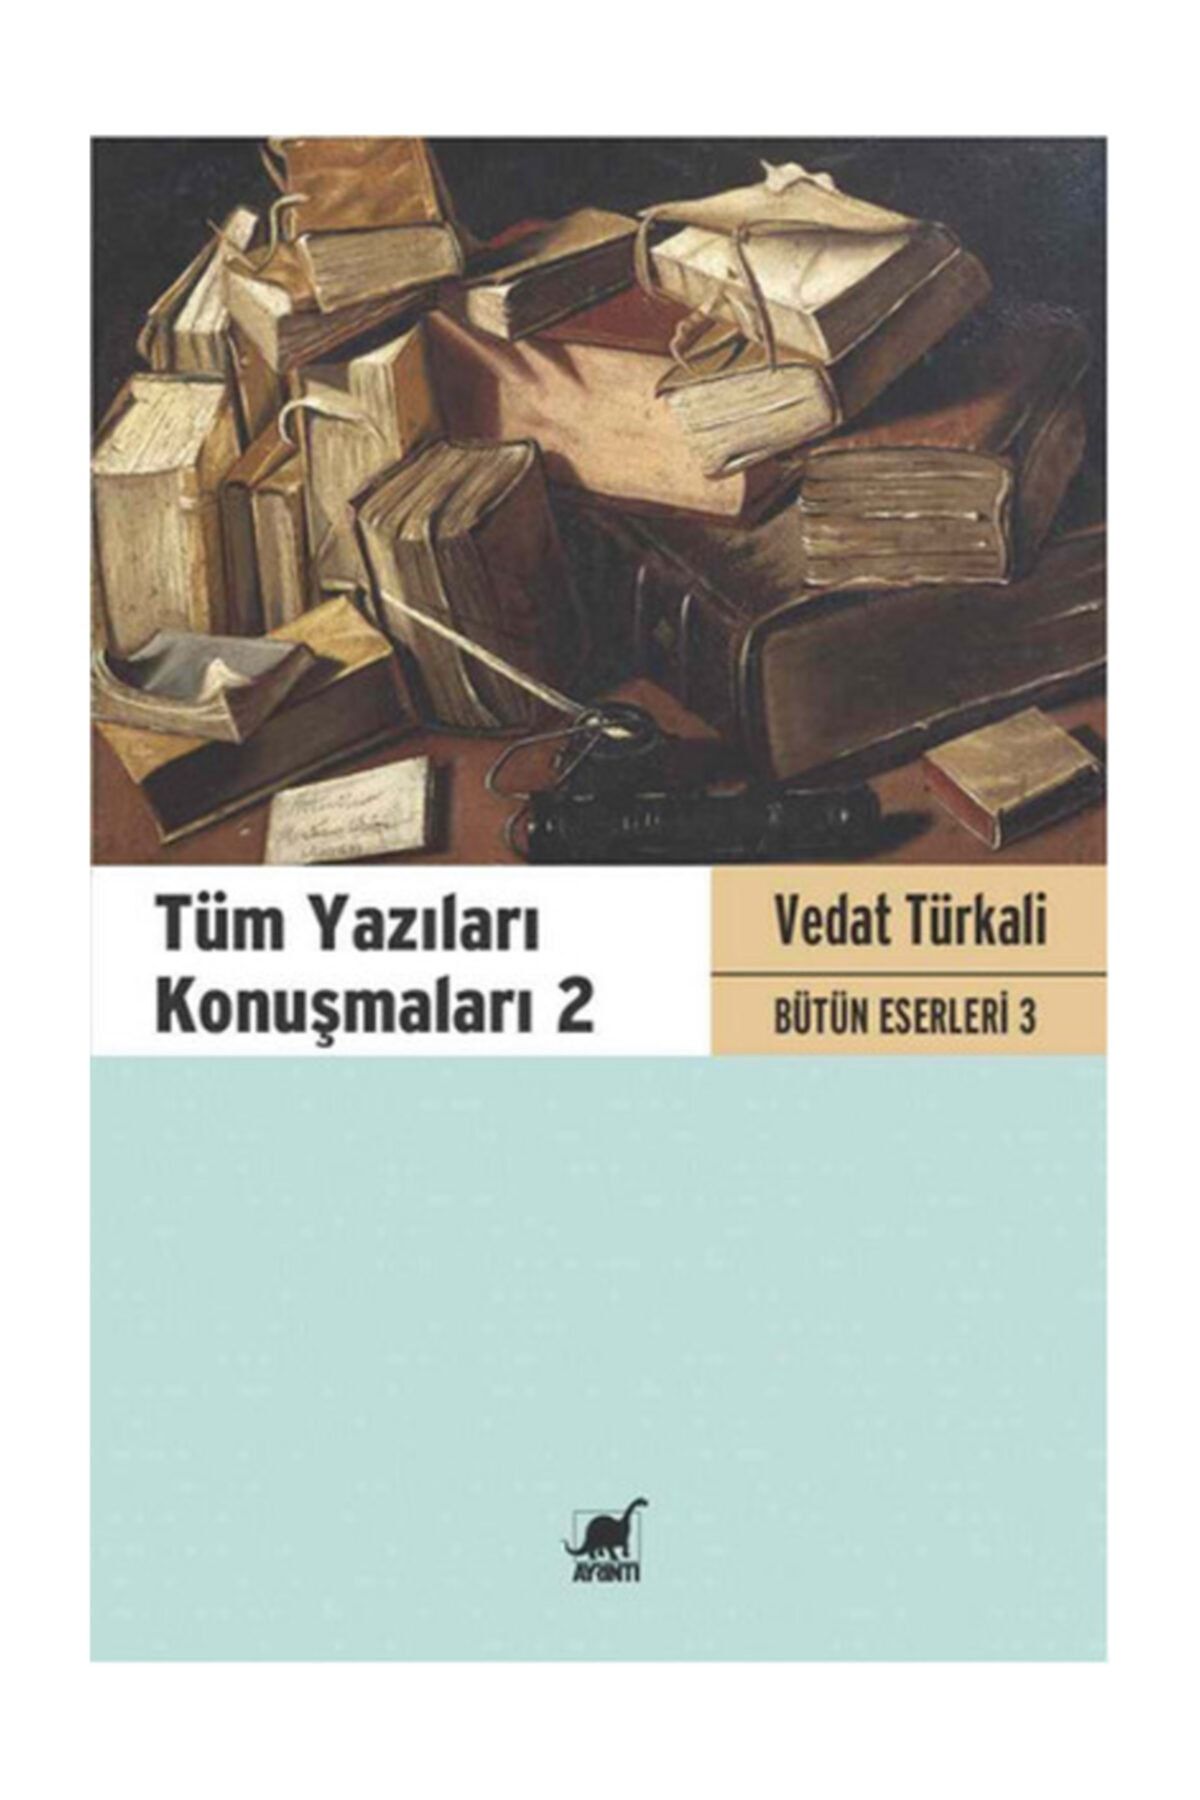 Ayrıntı Yayınları Tüm Yazıları Konuşmaları 2 Vedat Türkali Bütün Eserleri 3